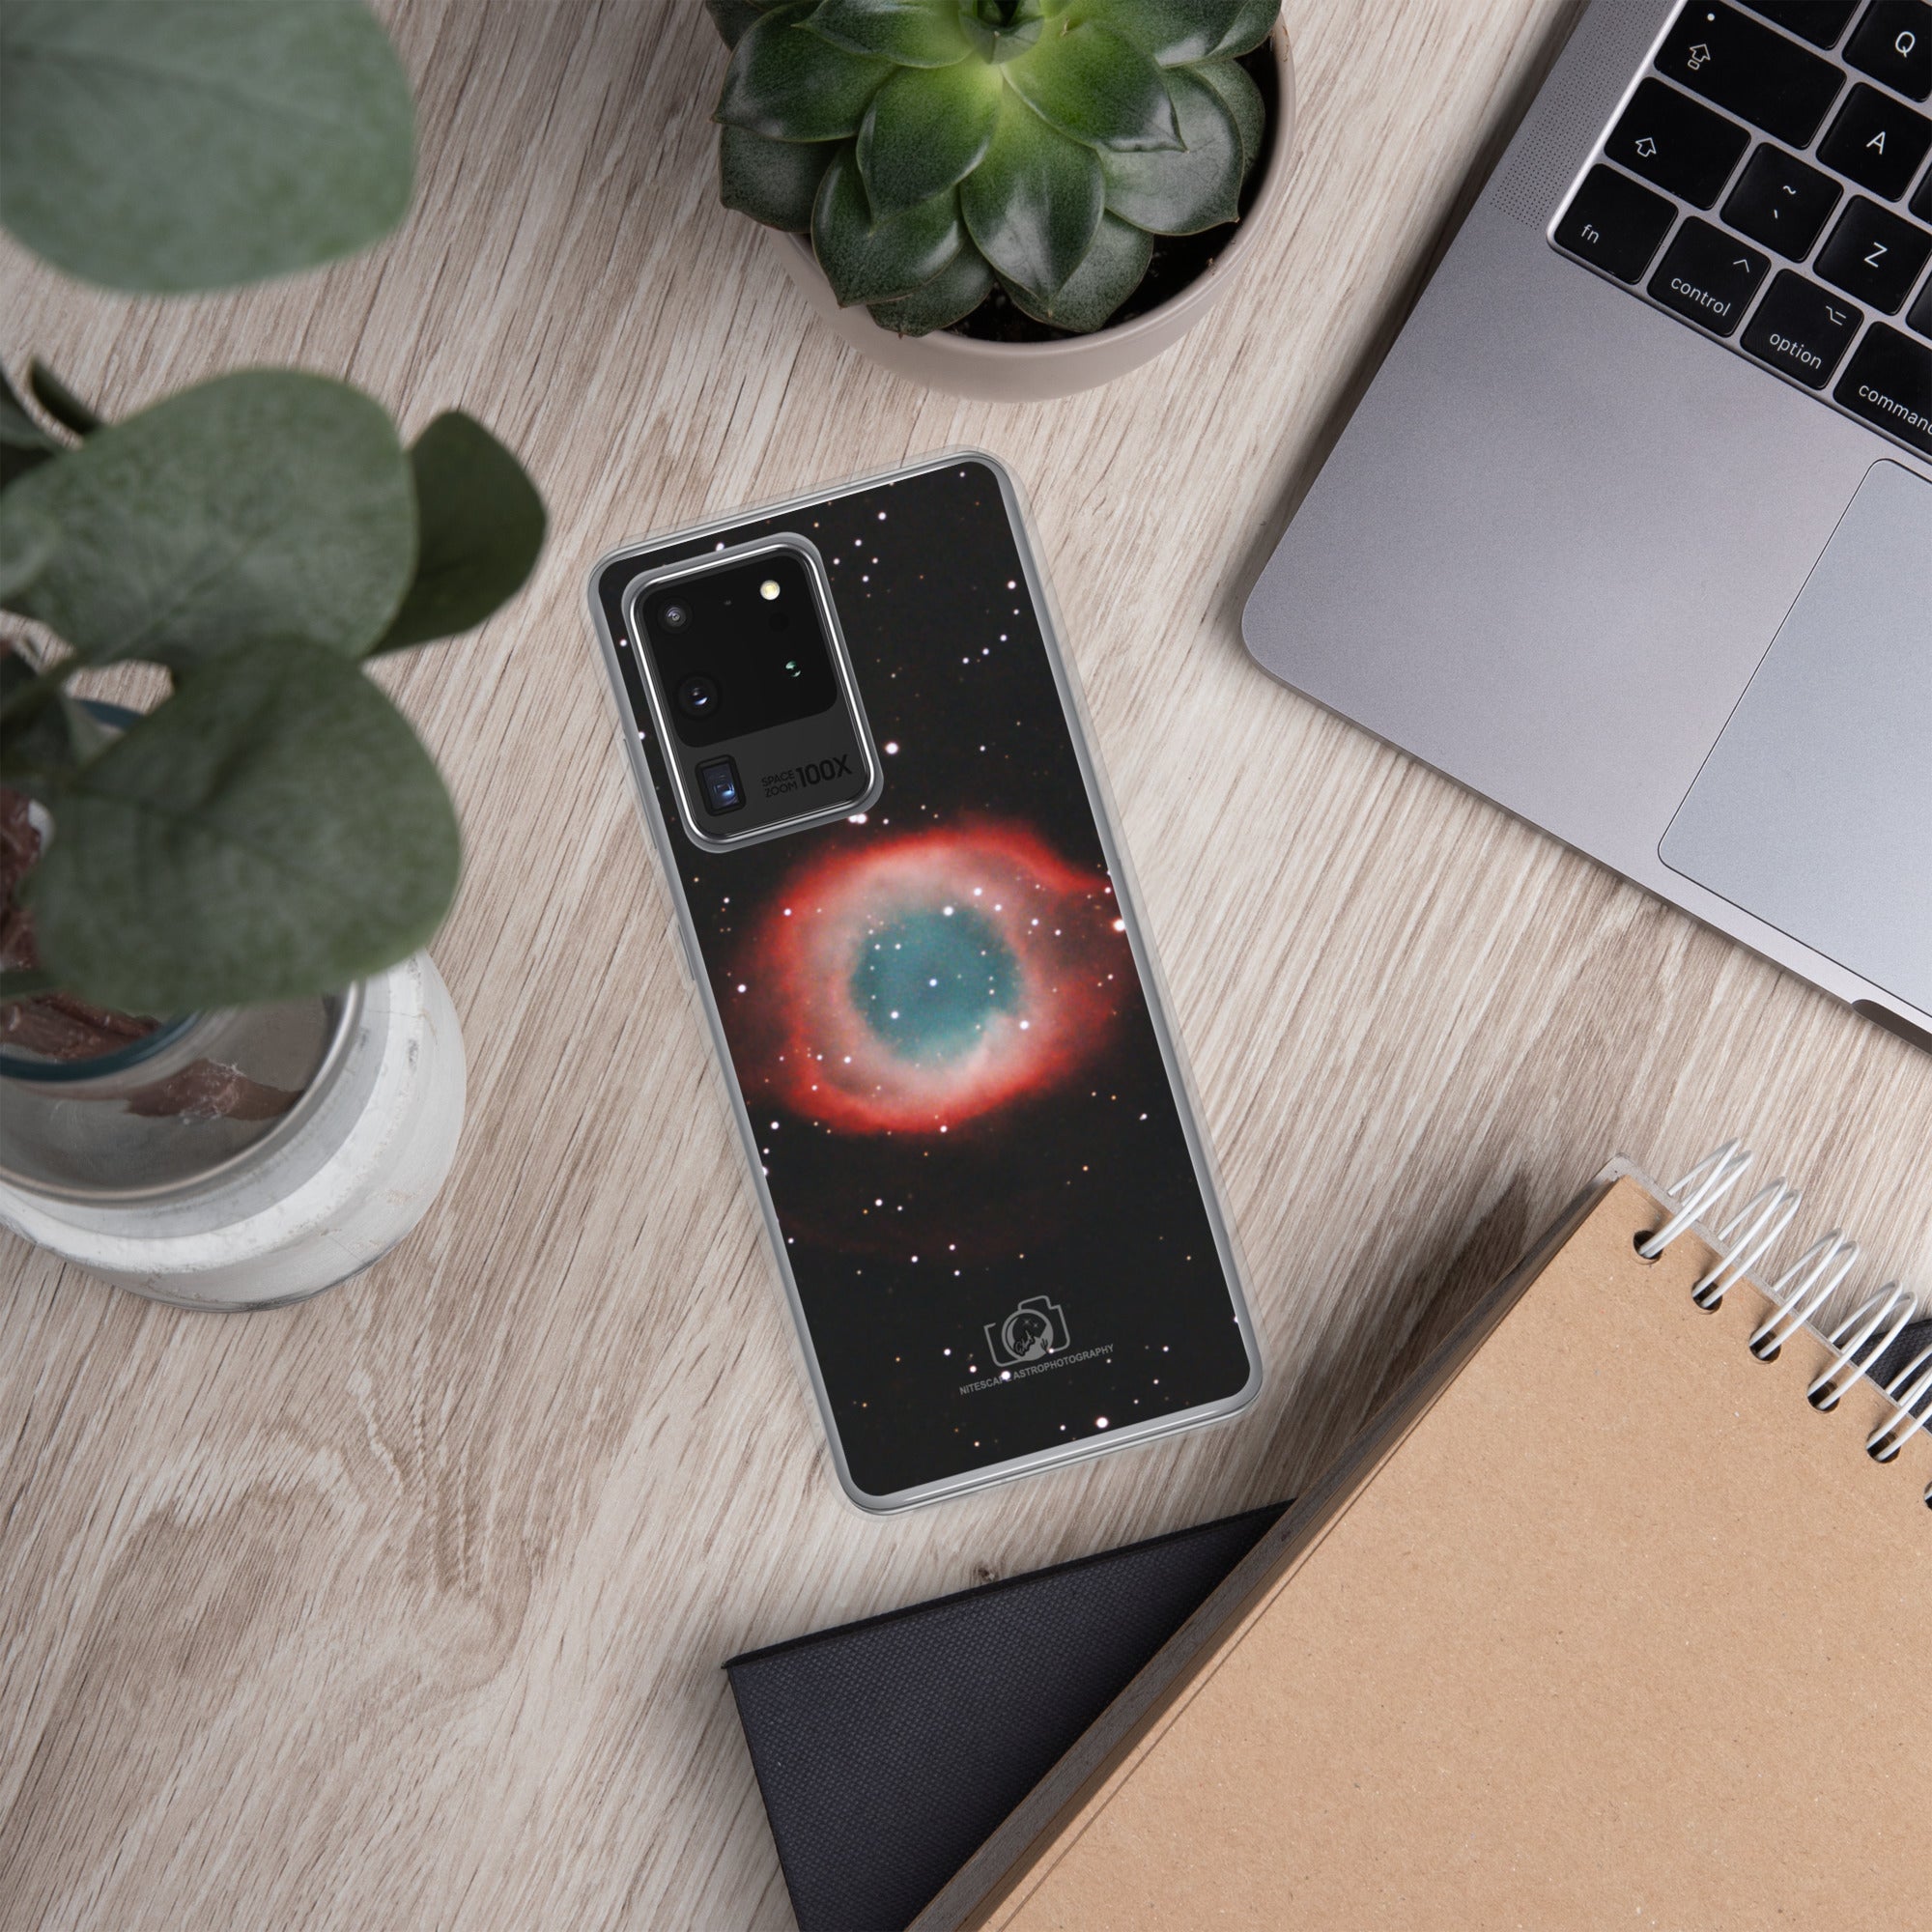 Samsung Phone Case:  Helix (Eye of God) Nebula